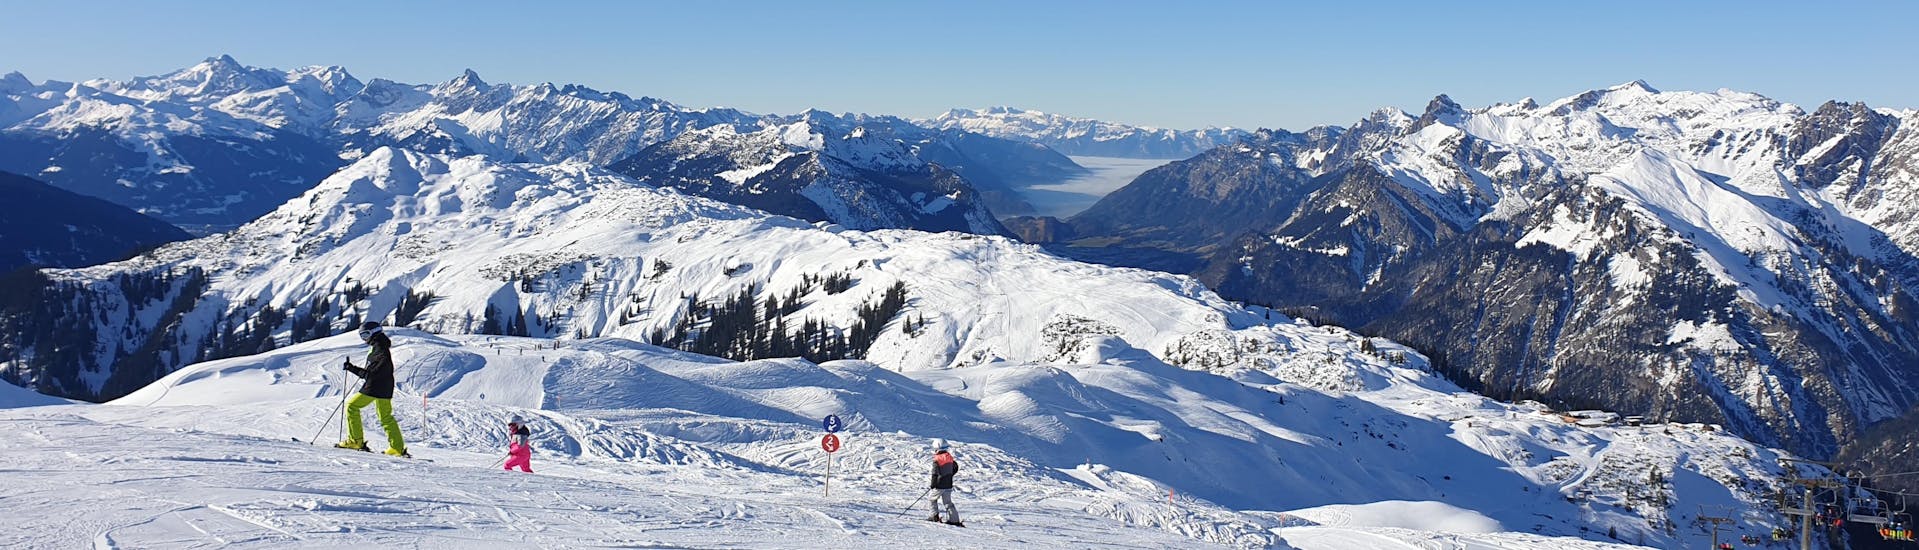 Ausblick auf die sonnige Berglandschaft beim Skifahren lernen mit den Skischulen im Skigebiet Sonnenkopf-Klostertal.